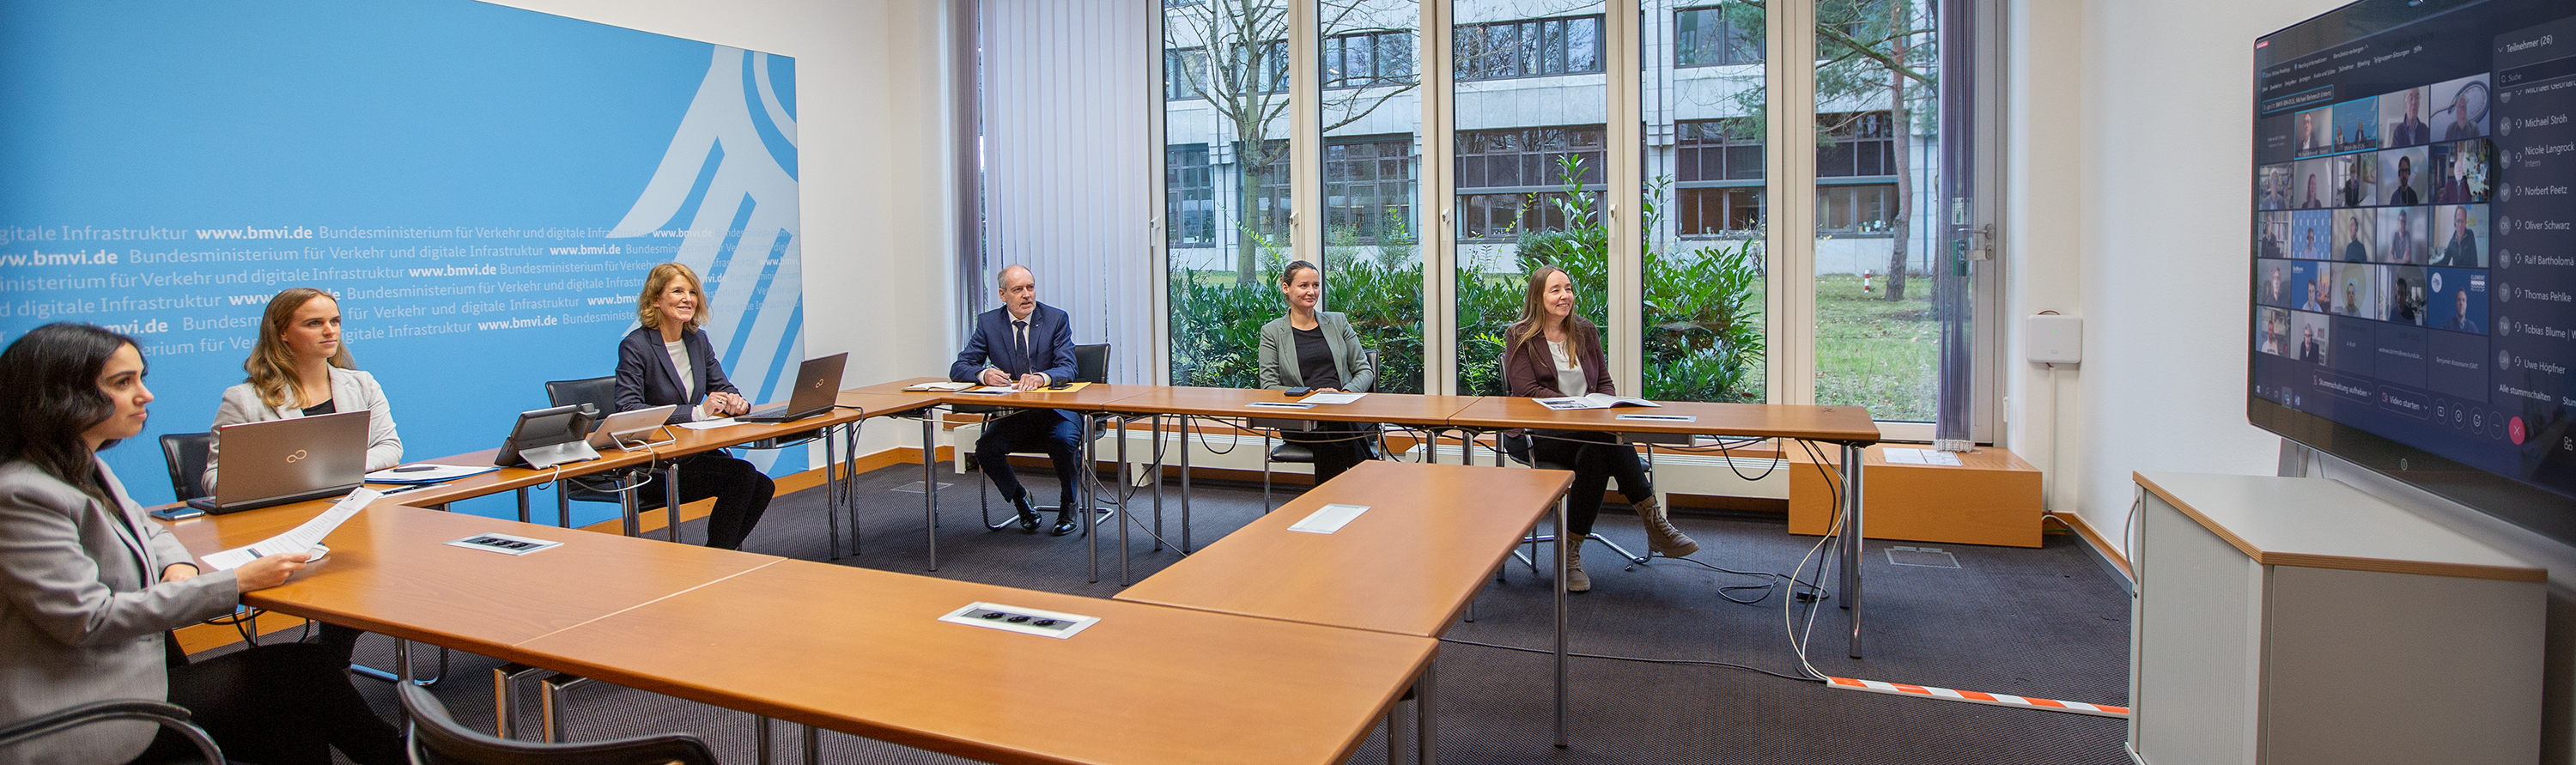 Beteiligte von PIANC Deutschland sitzen an einem Tisch mit Blick auf einen Monitor mit zugeschalteten Personen.